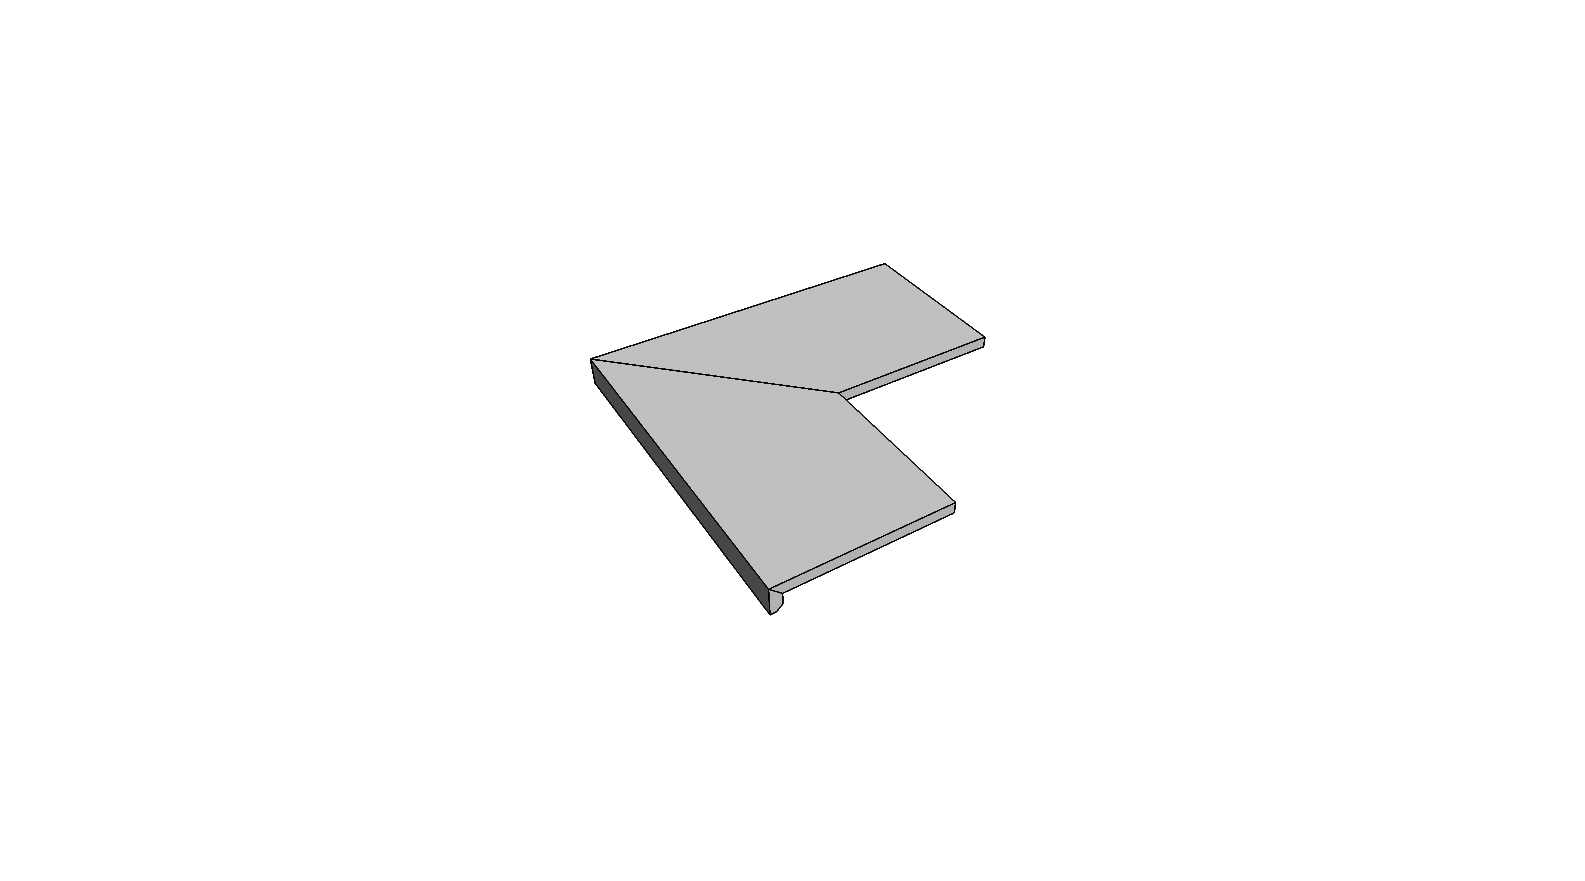 L-rand randtegel aflopend gelijmd volledige buitenhoek (2 stuks) <span style="white-space:nowrap;">30x60x5 cm</span>   <span style="white-space:nowrap;">ép. 20mm</span>